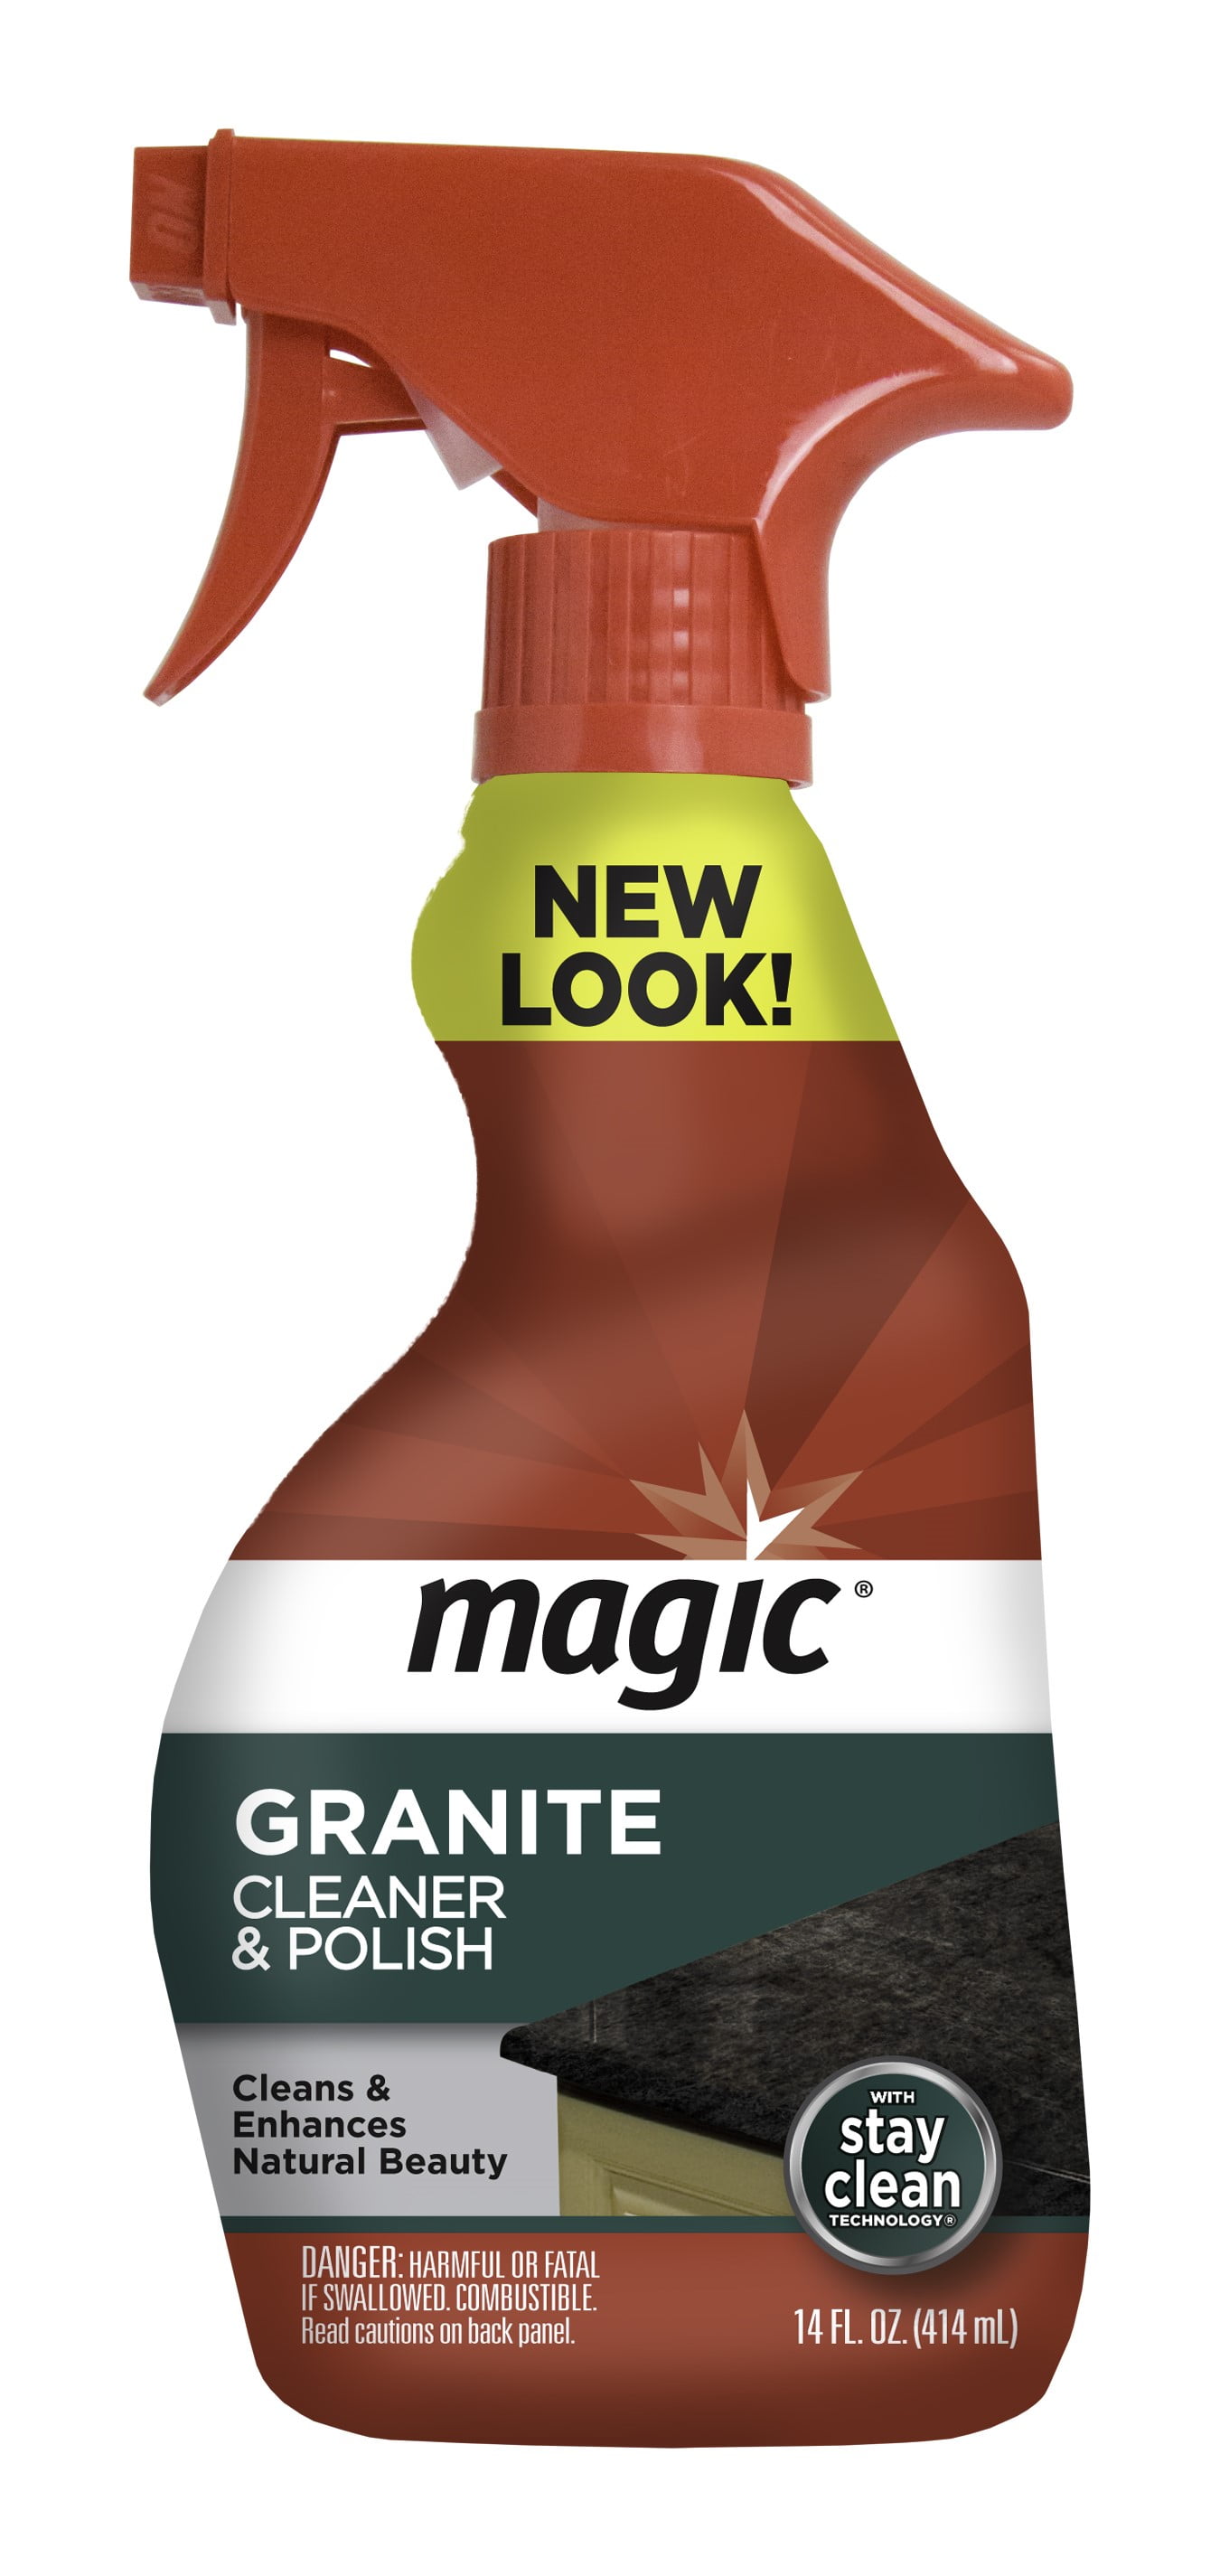  Magic Granite Cleaner & Polish - Enhances Natural